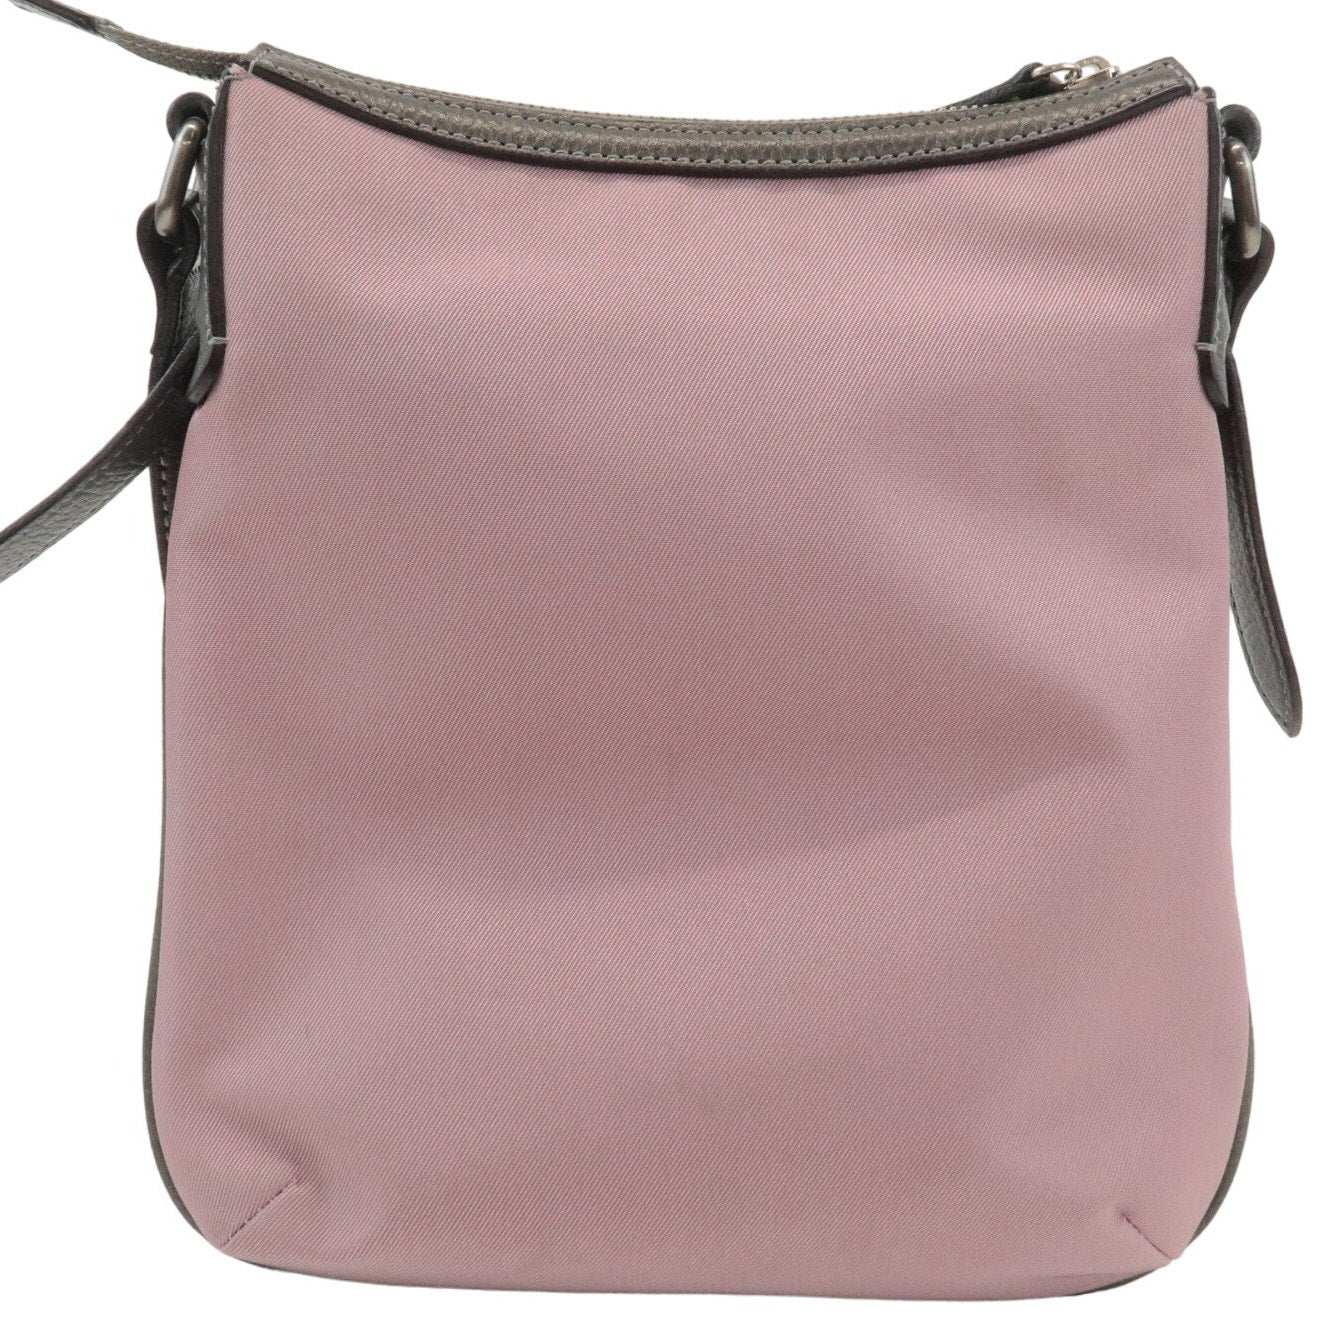 Authentic BURBERRY Nova Plaid Shoulder Bag